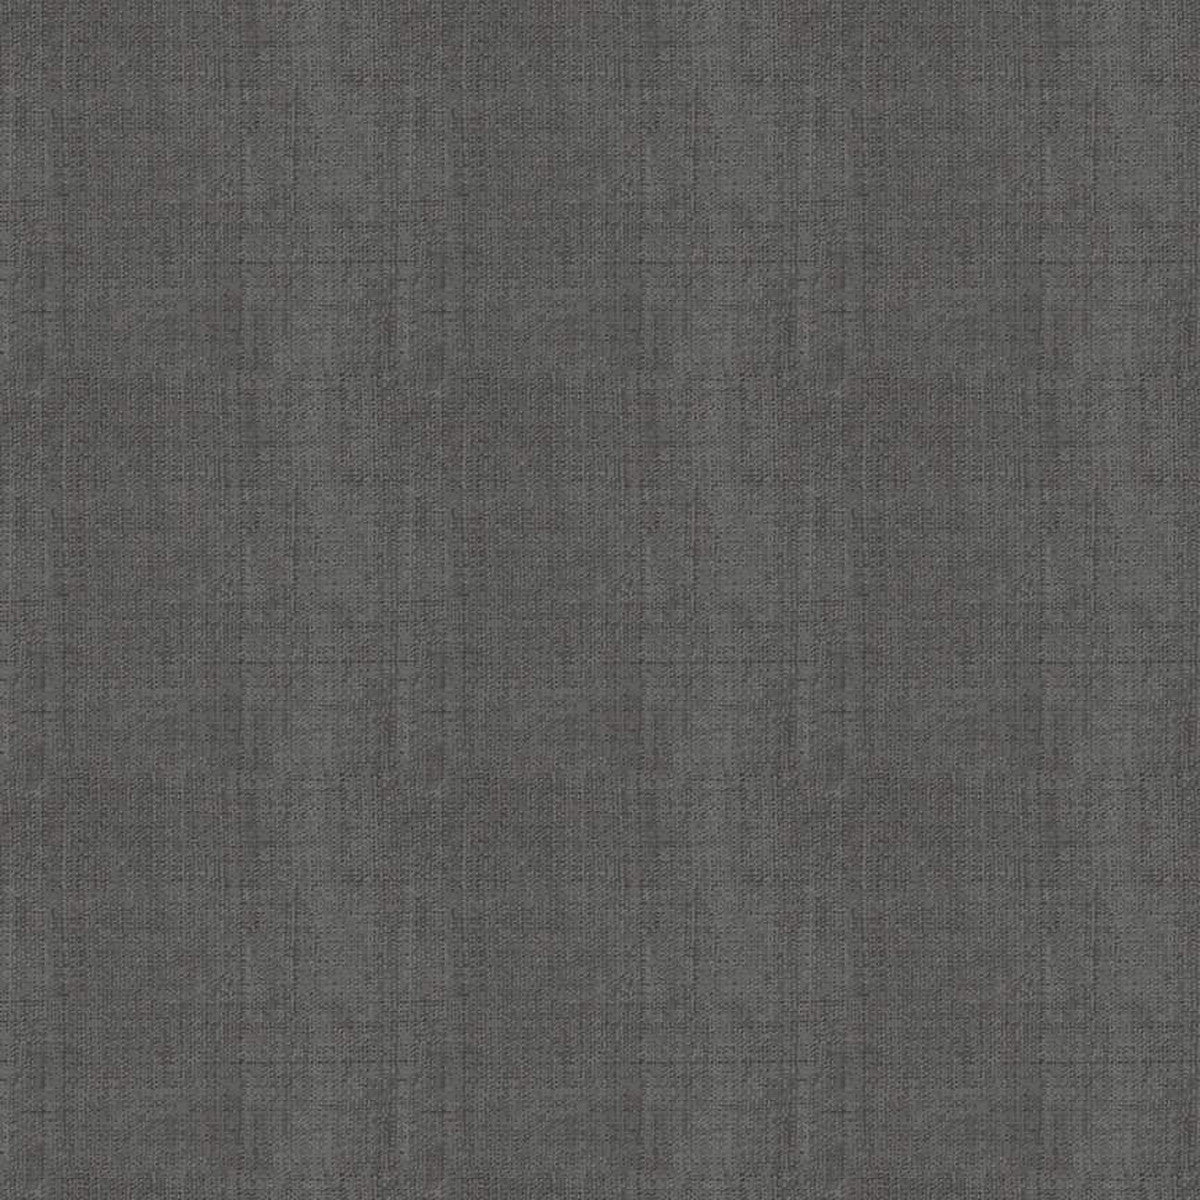 Linen - Dark Gray